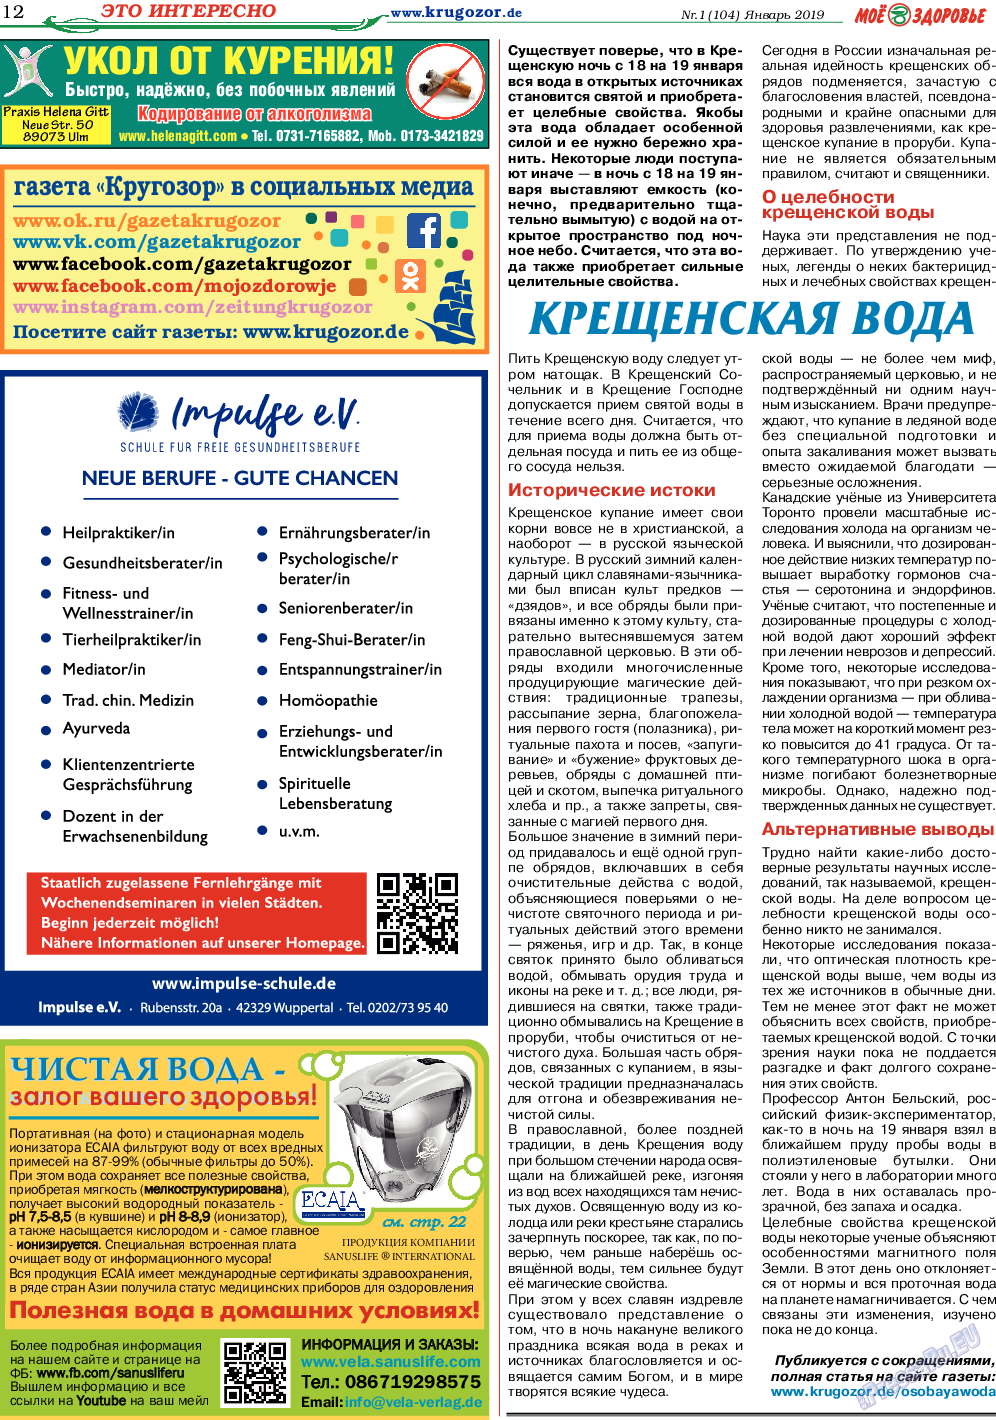 Кругозор, газета. 2019 №1 стр.12